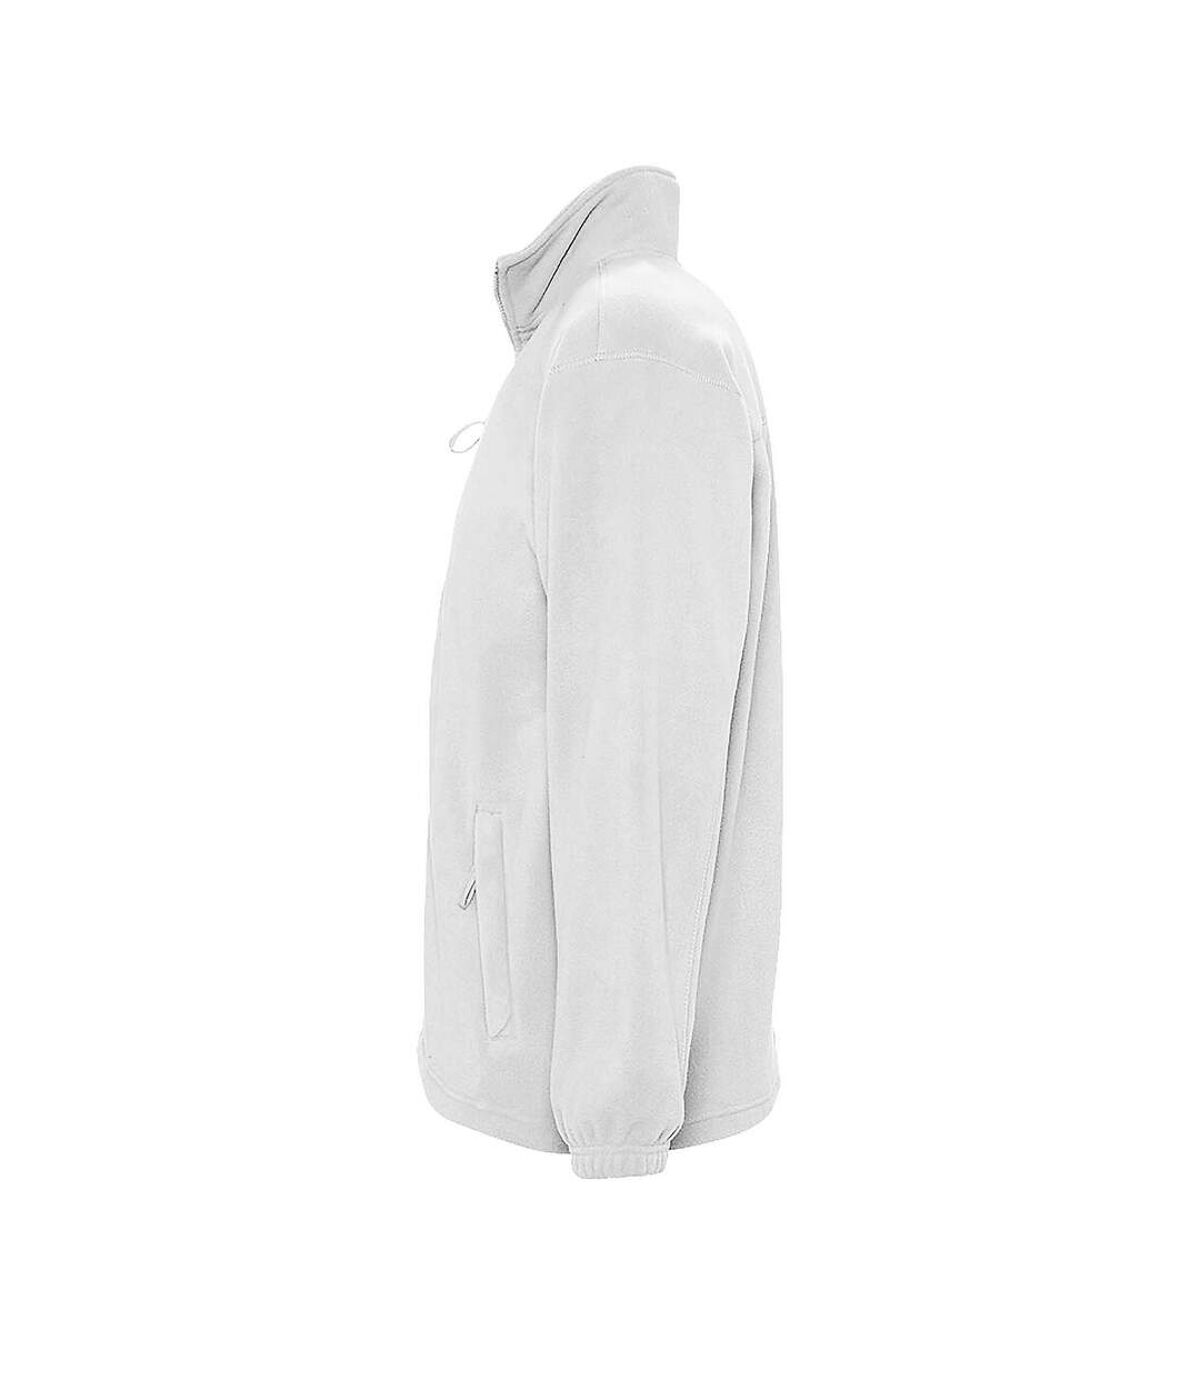 SOLS Mens North Full Zip Outdoor Fleece Jacket (White) - UTPC343